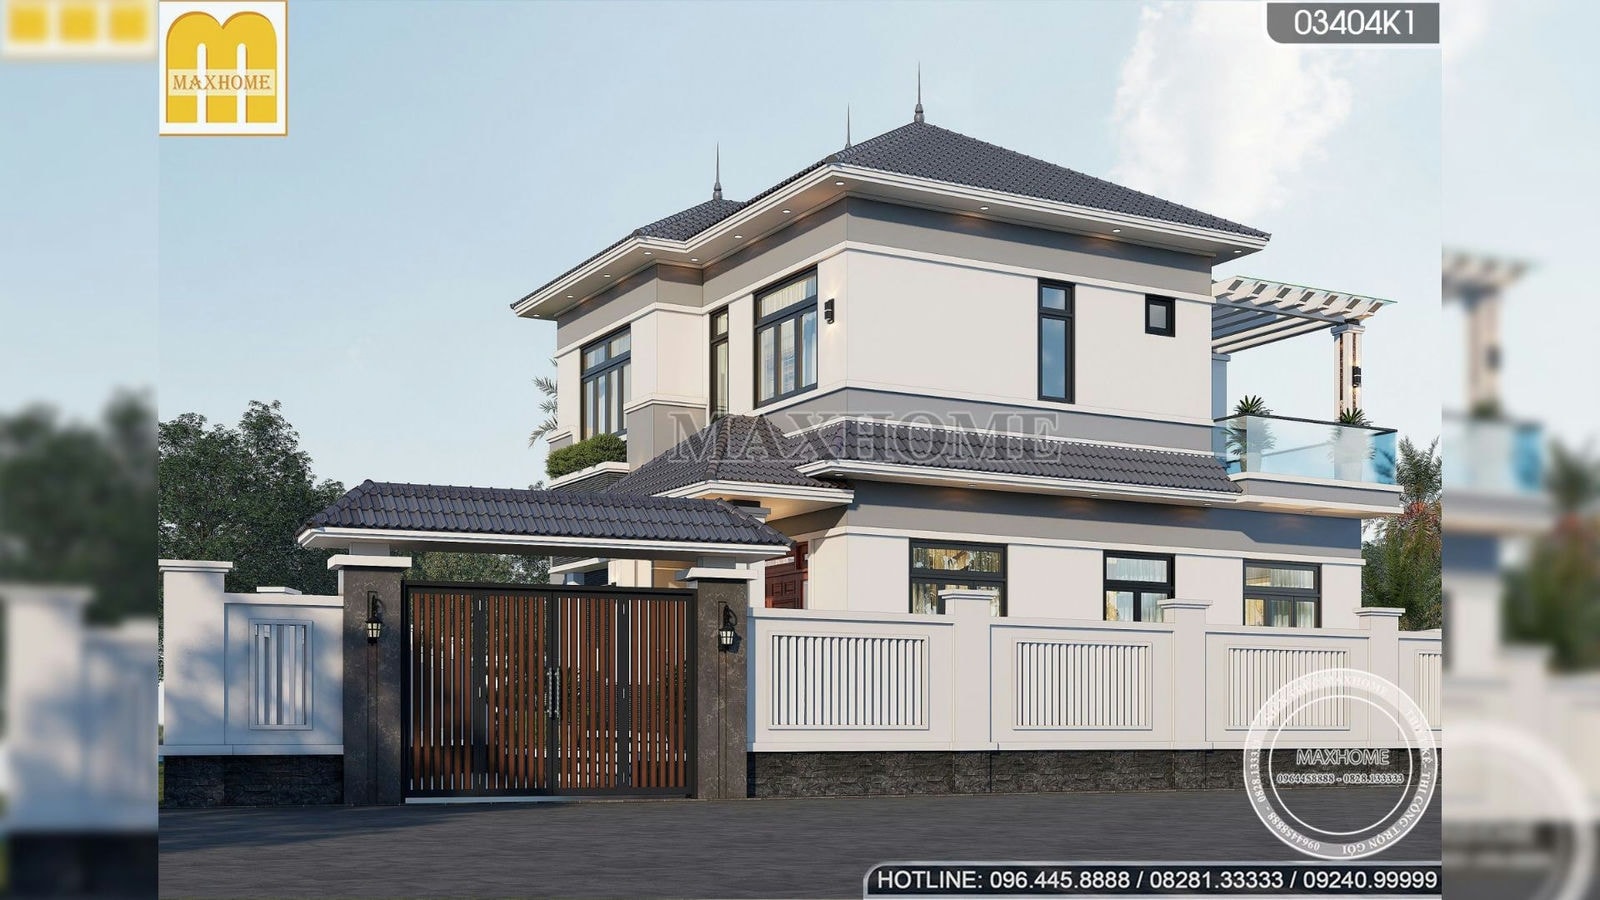 Mẫu nhà mái Nhật 2 tầng đẹp lung linh hiện đại 4 phòng ngủ tiện nghi | MH01873